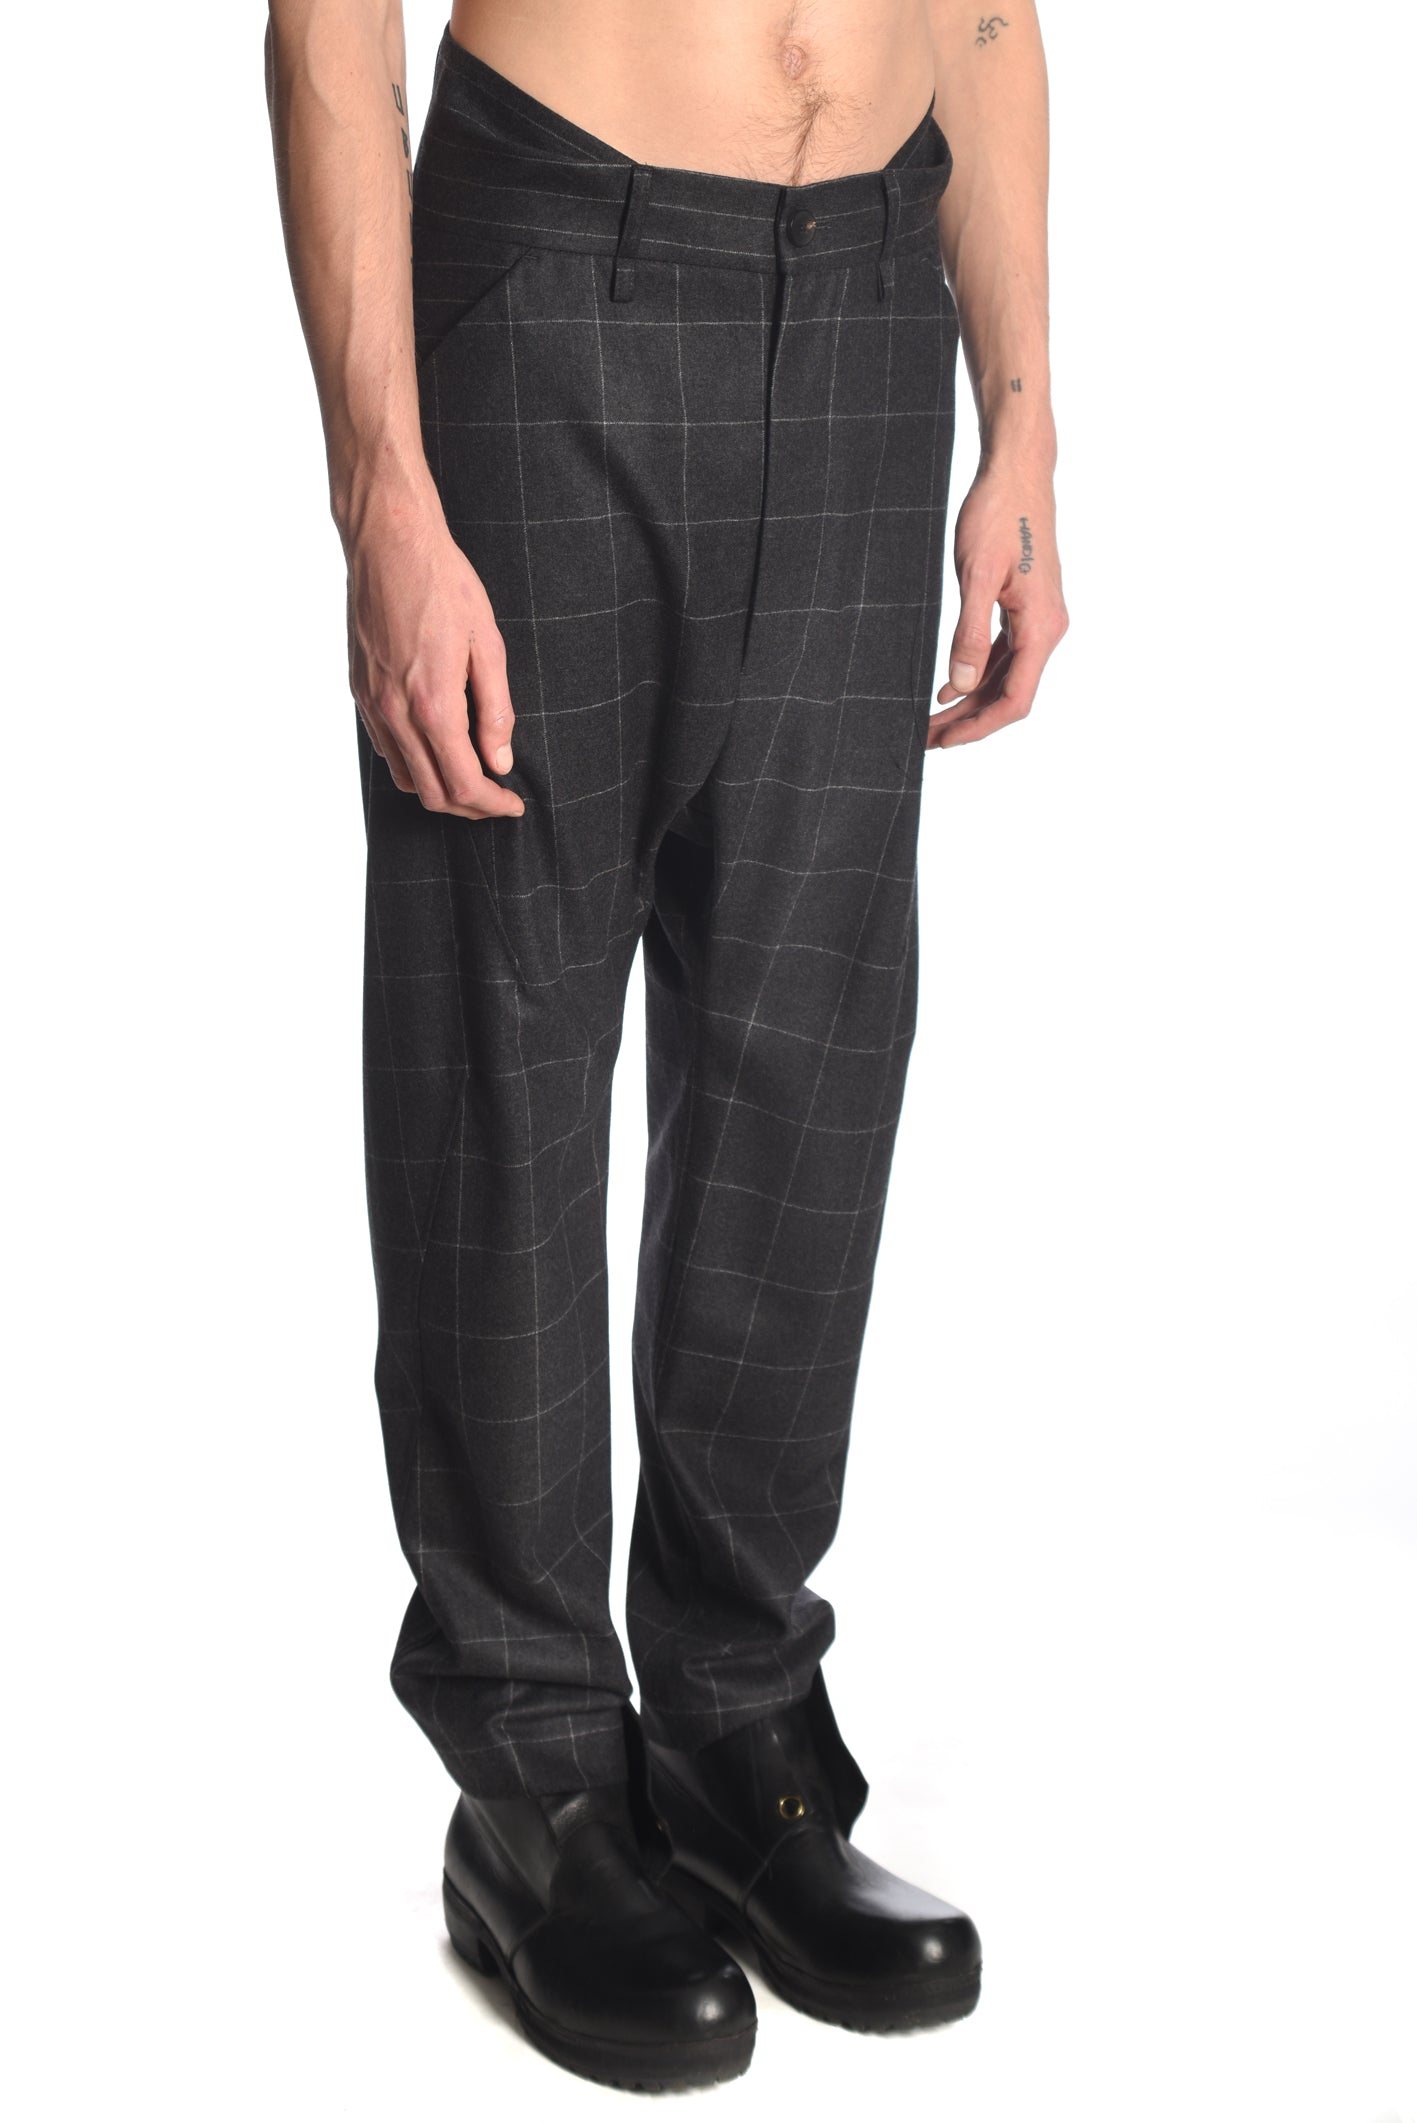 Twistwaist Decoup Suitpants